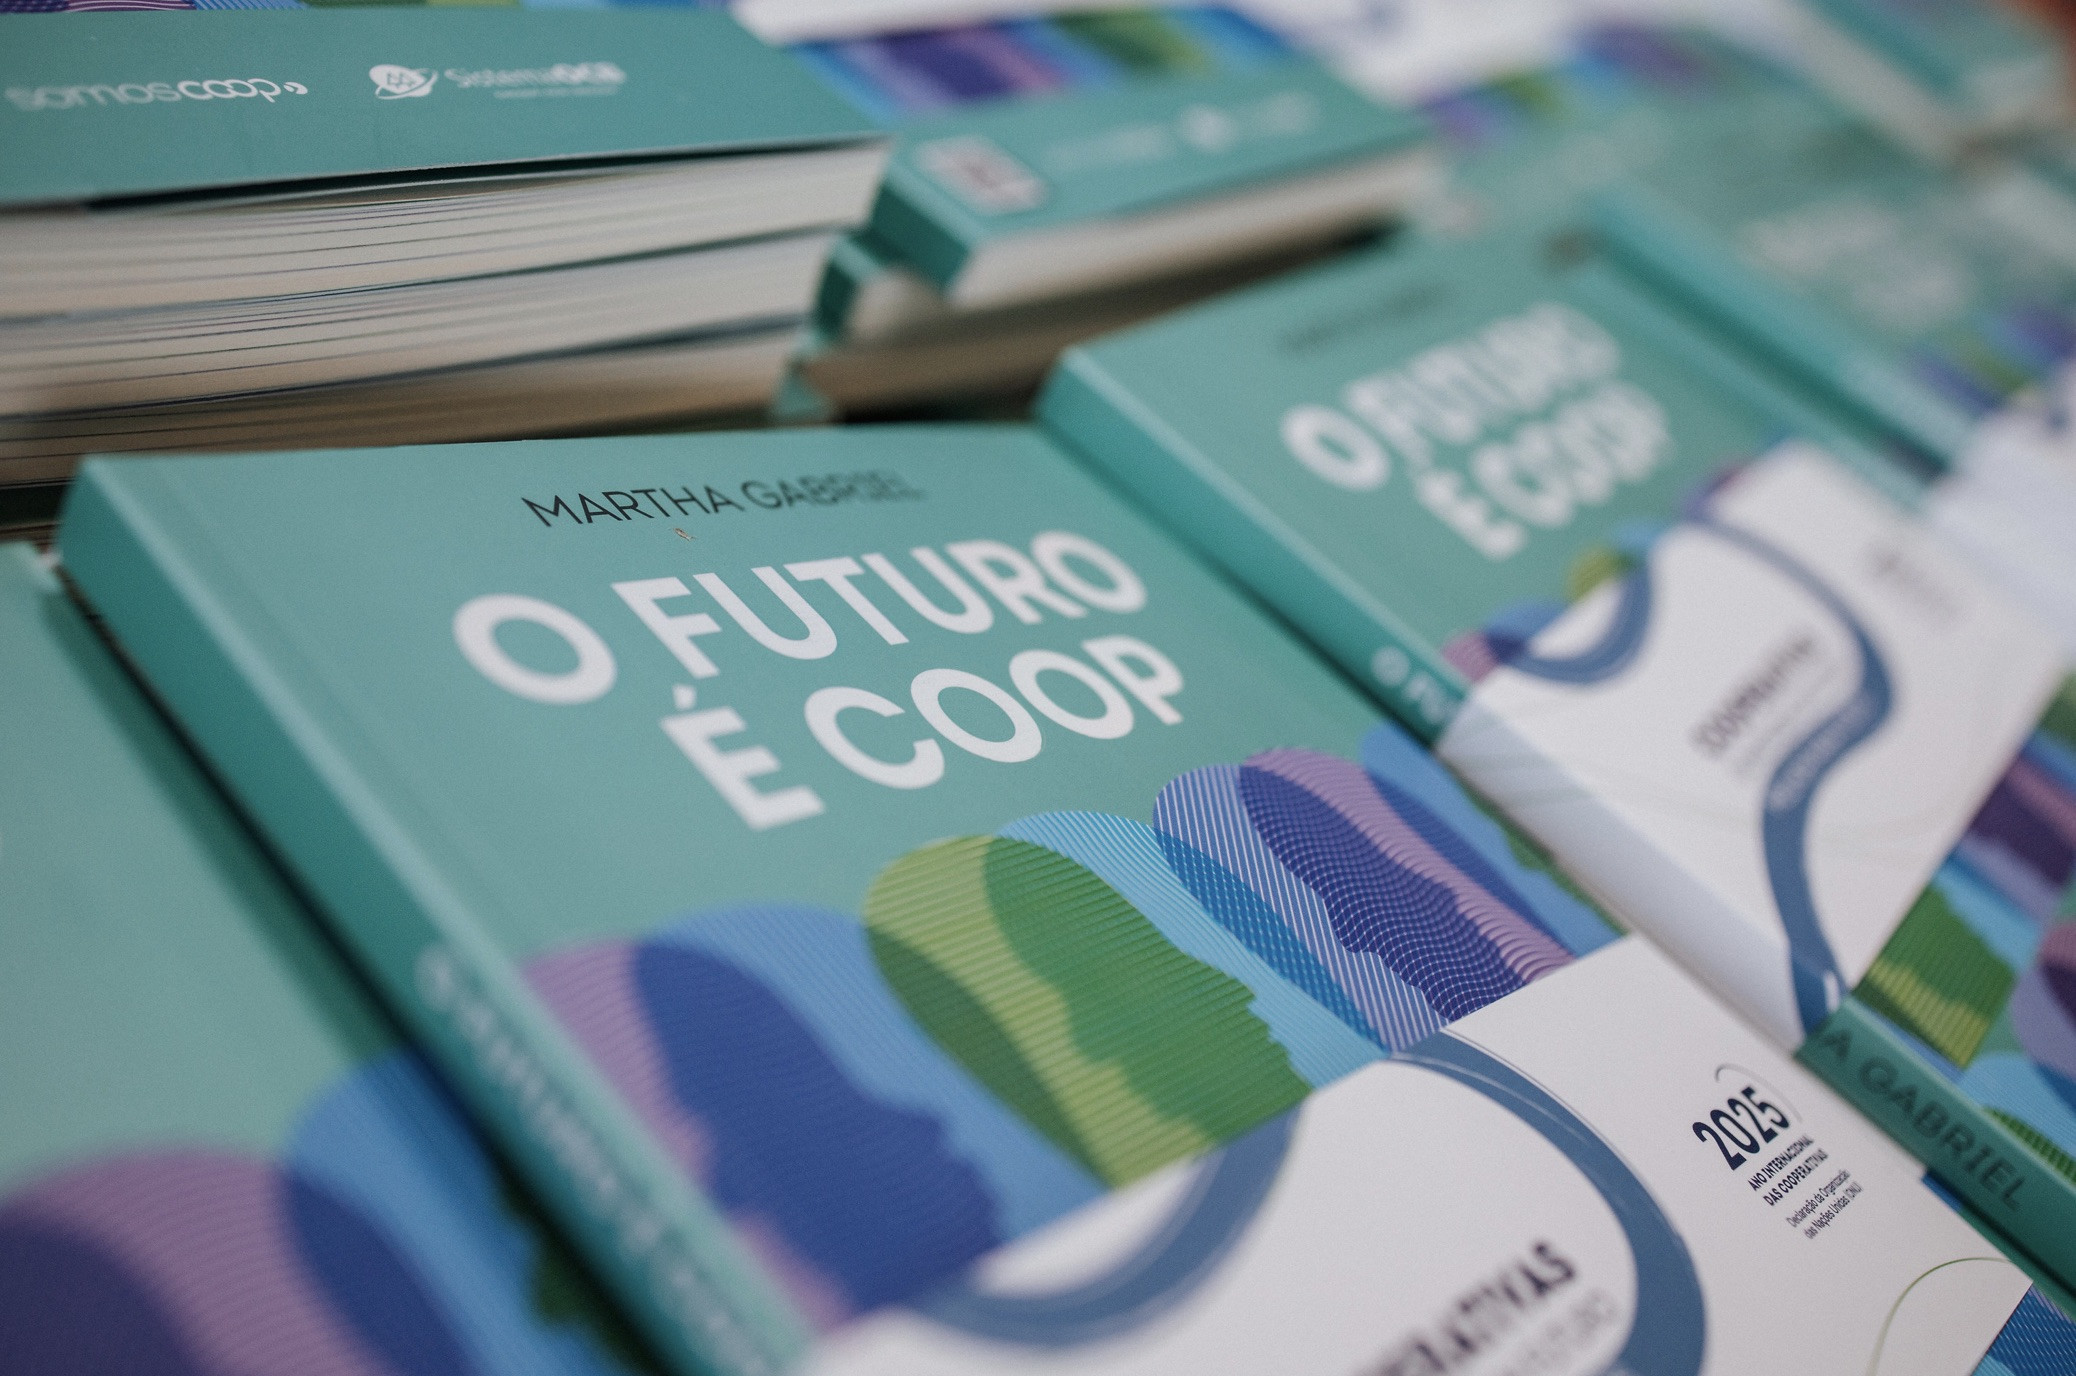 O Sistema OCB distribuiu exemplares da obra "O futuro é coop"